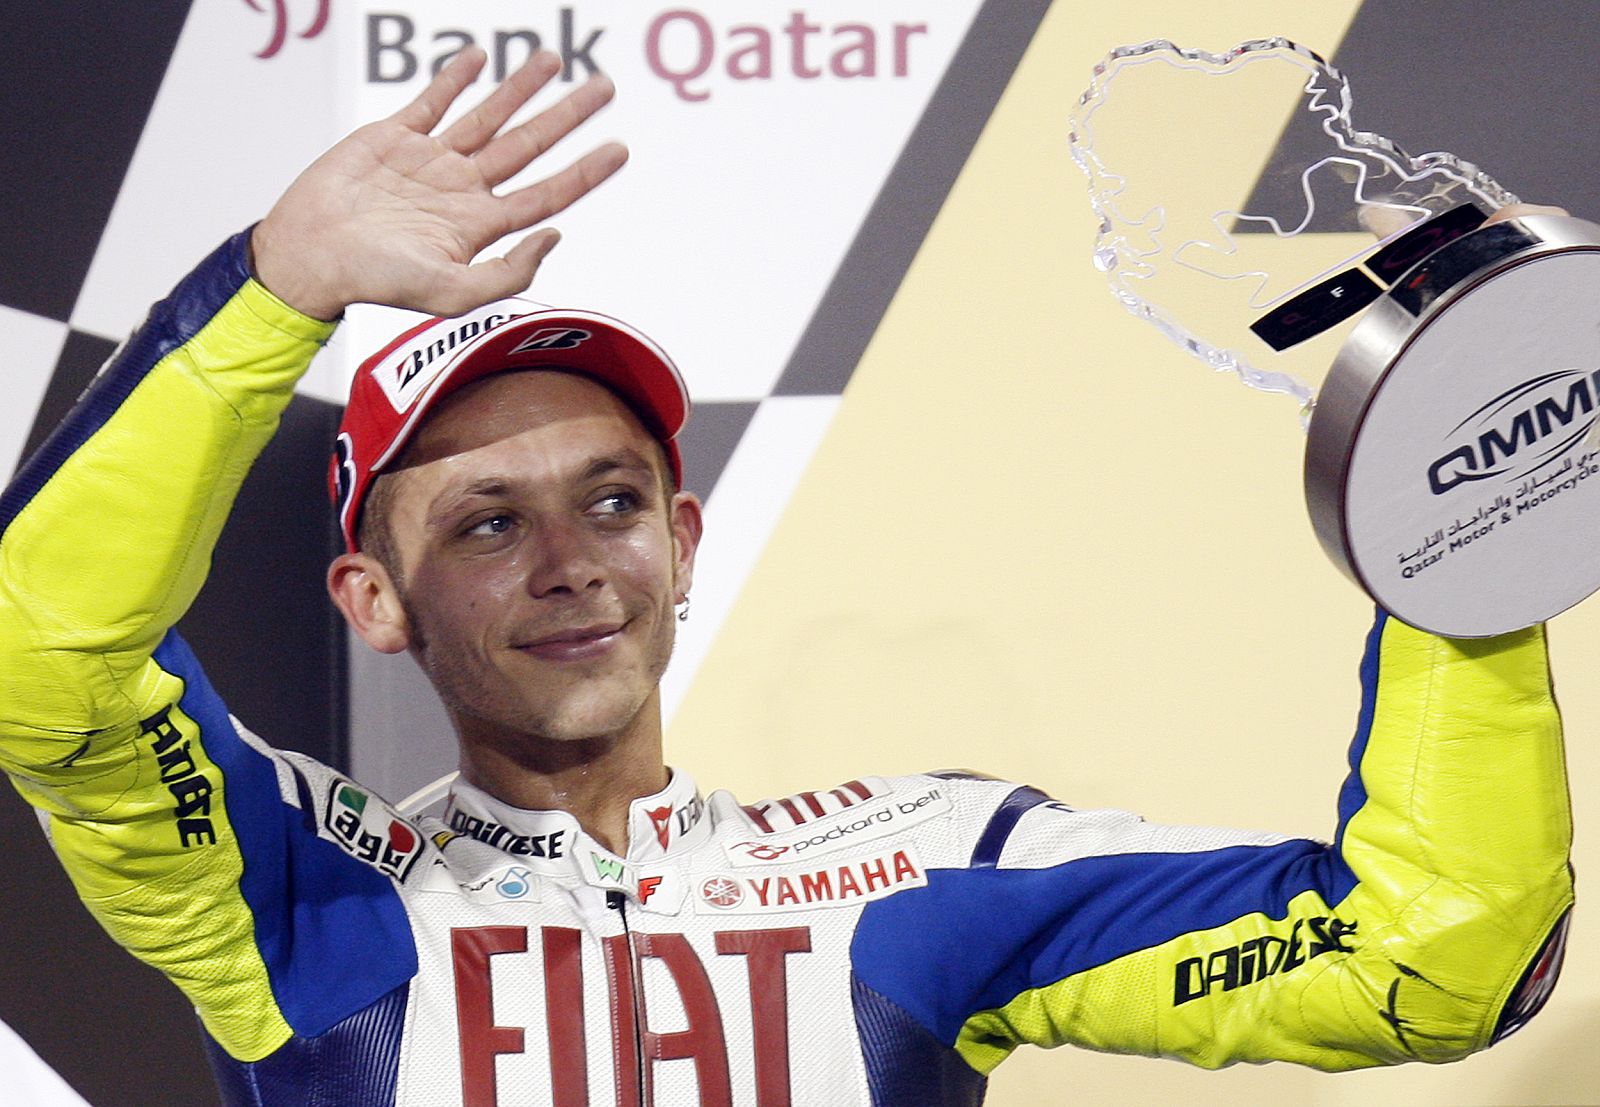 El piloto de Yamaha Valentino Rossi alza su trofeo después de quedar en segunda posición en el GP de Qatar.